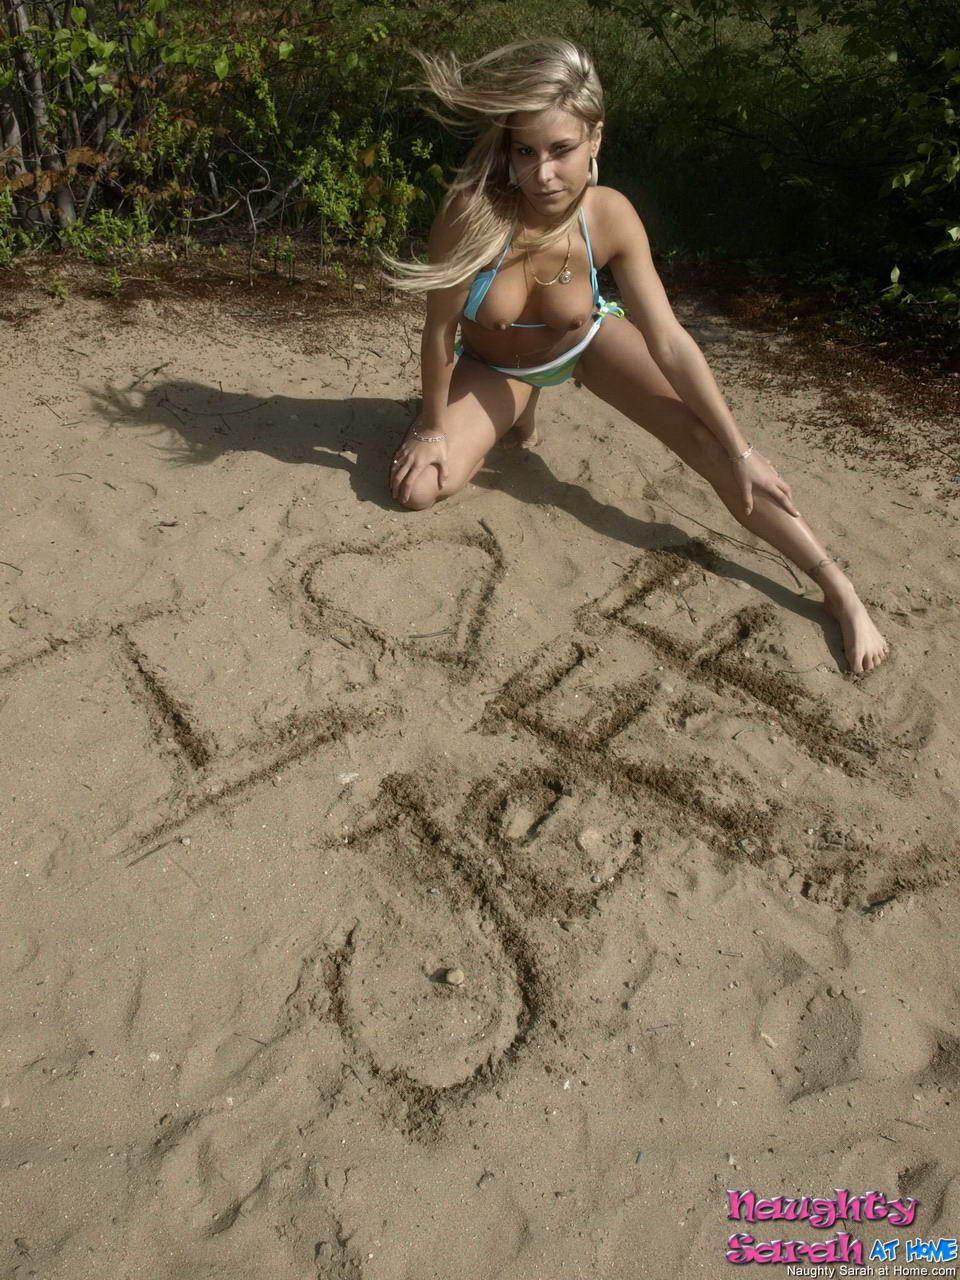 Bilder von Teenie-Porno-Mädchen naughty sarah stripping nude on a beach
 #59723414